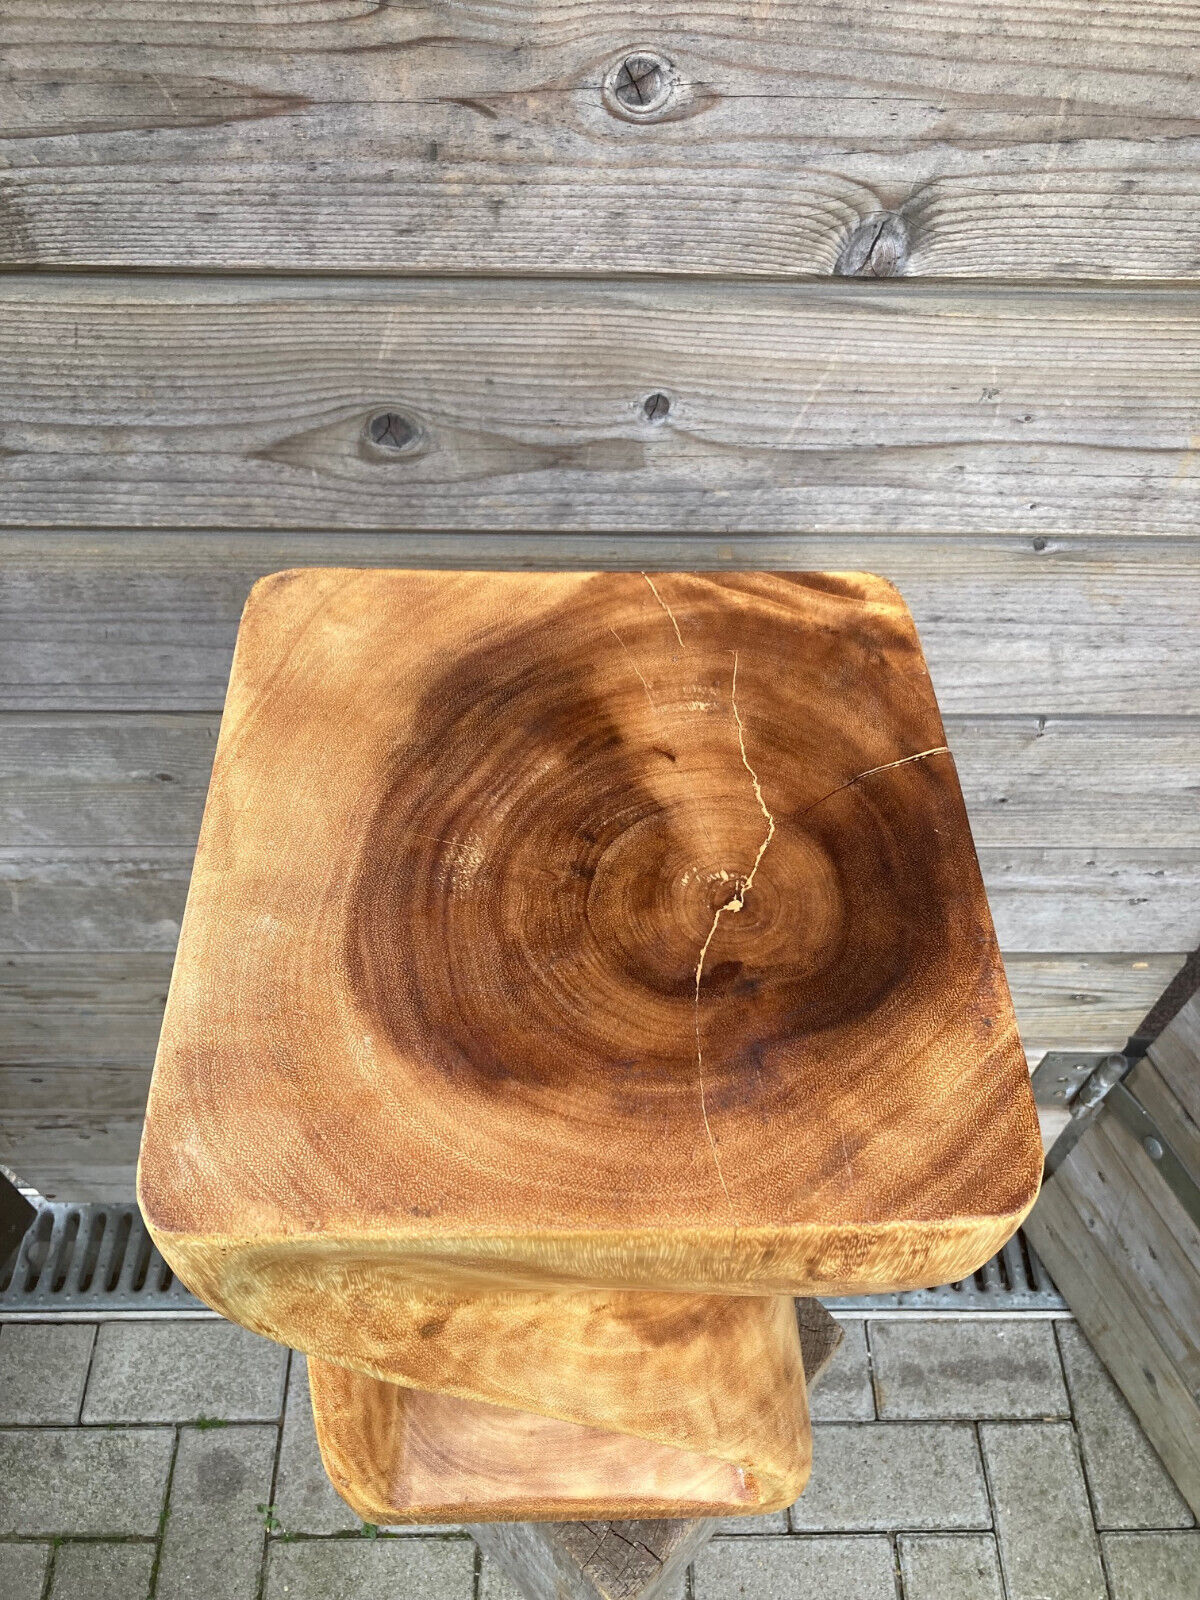 50cm Holz Hocker Couchtisch Beistelltisch Sitzhocker gedreht REDUZIERT 119 Euro